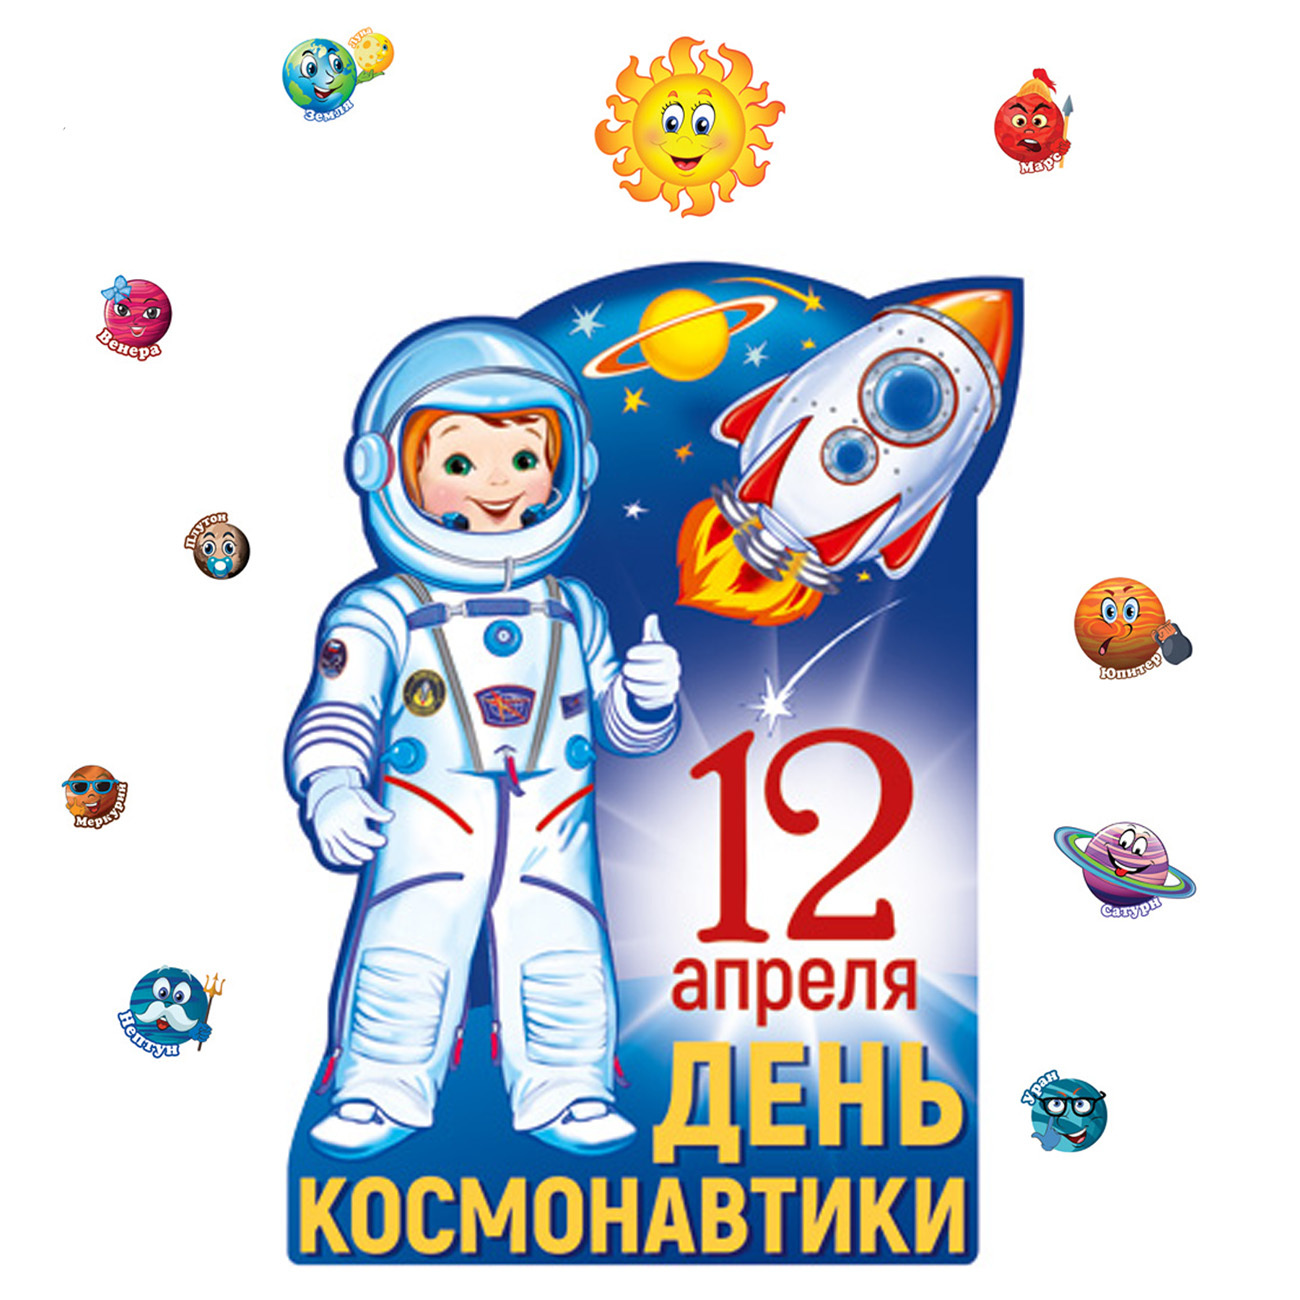 12 Апреля день космонавтики для детей. Открытки с днем космонавтики 12 апреля. 11 Апреля день космонавтики. Магнит день космонавтики 12 апреля. Какого числа день космонавтиков